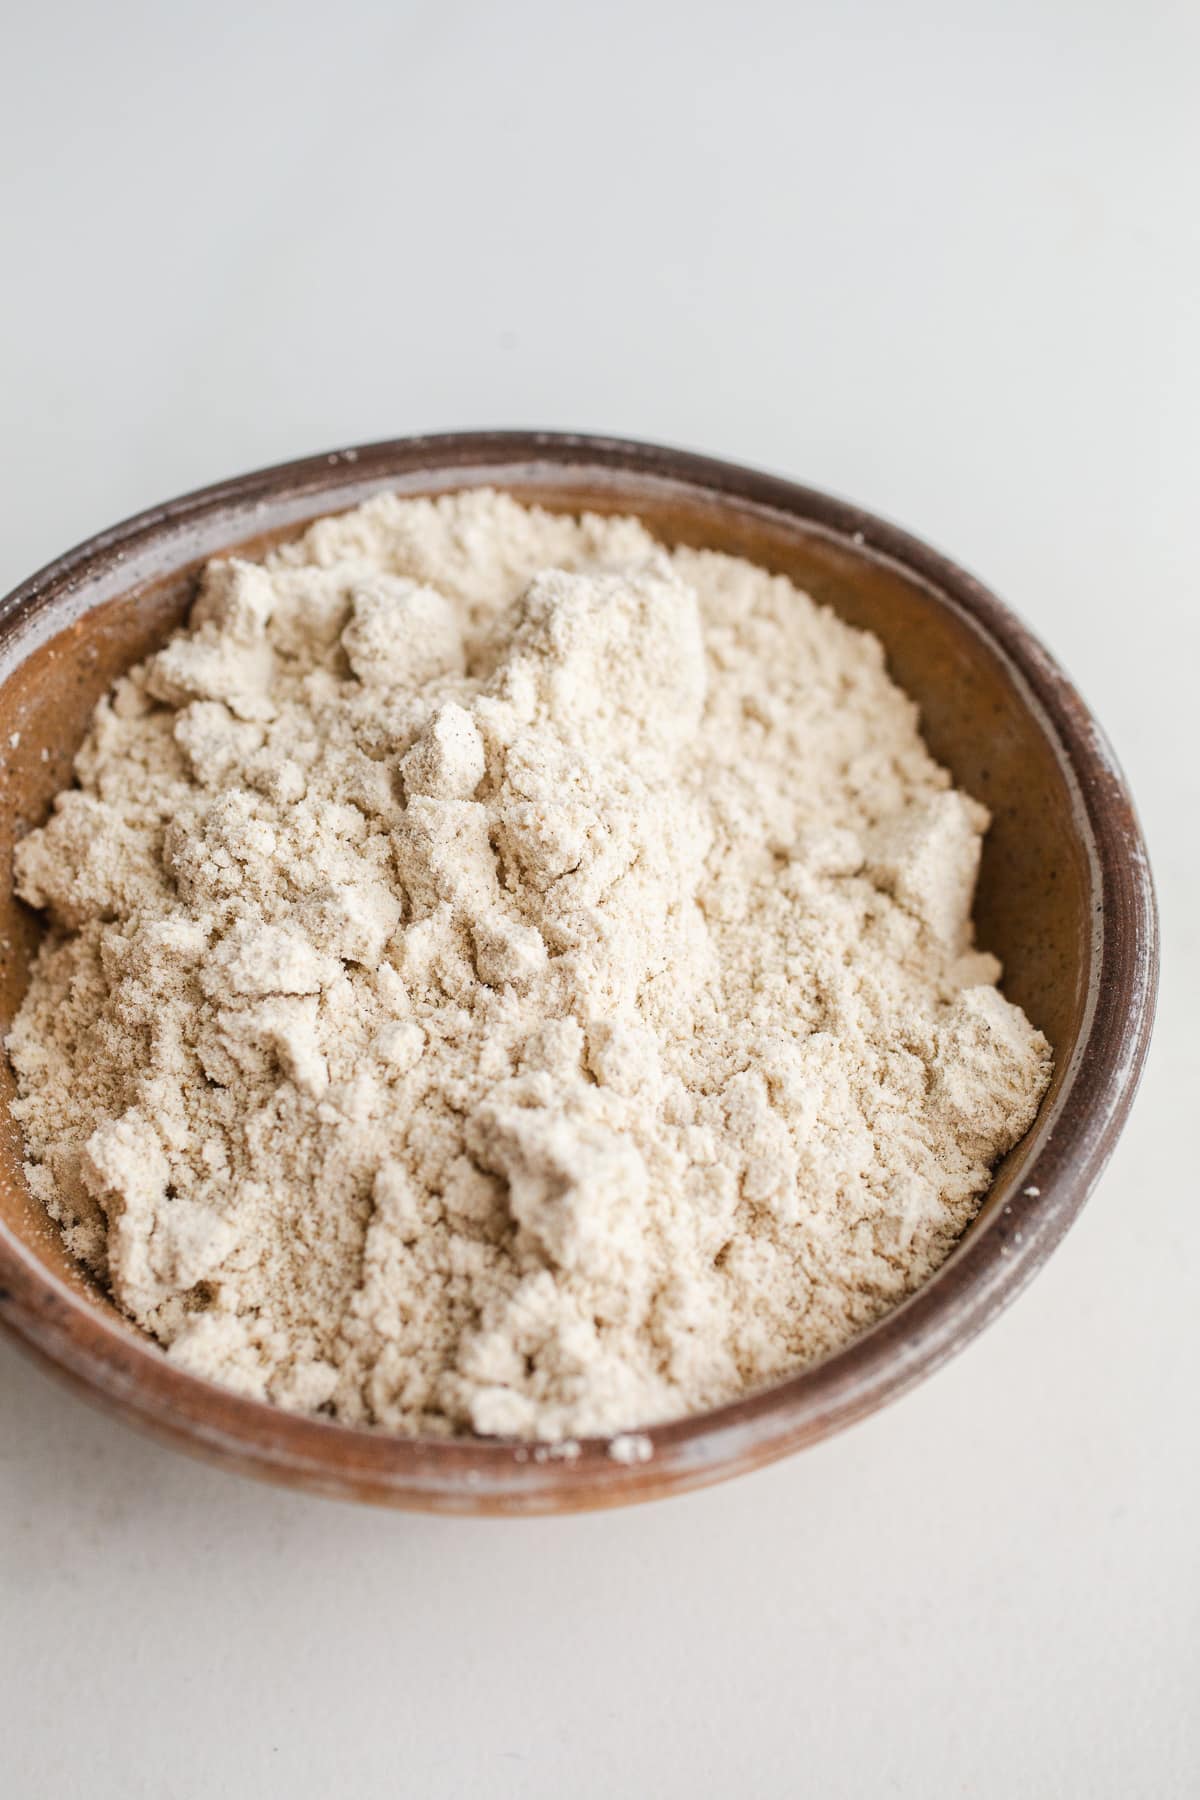 Sorghum flour in a rustic bowl. 